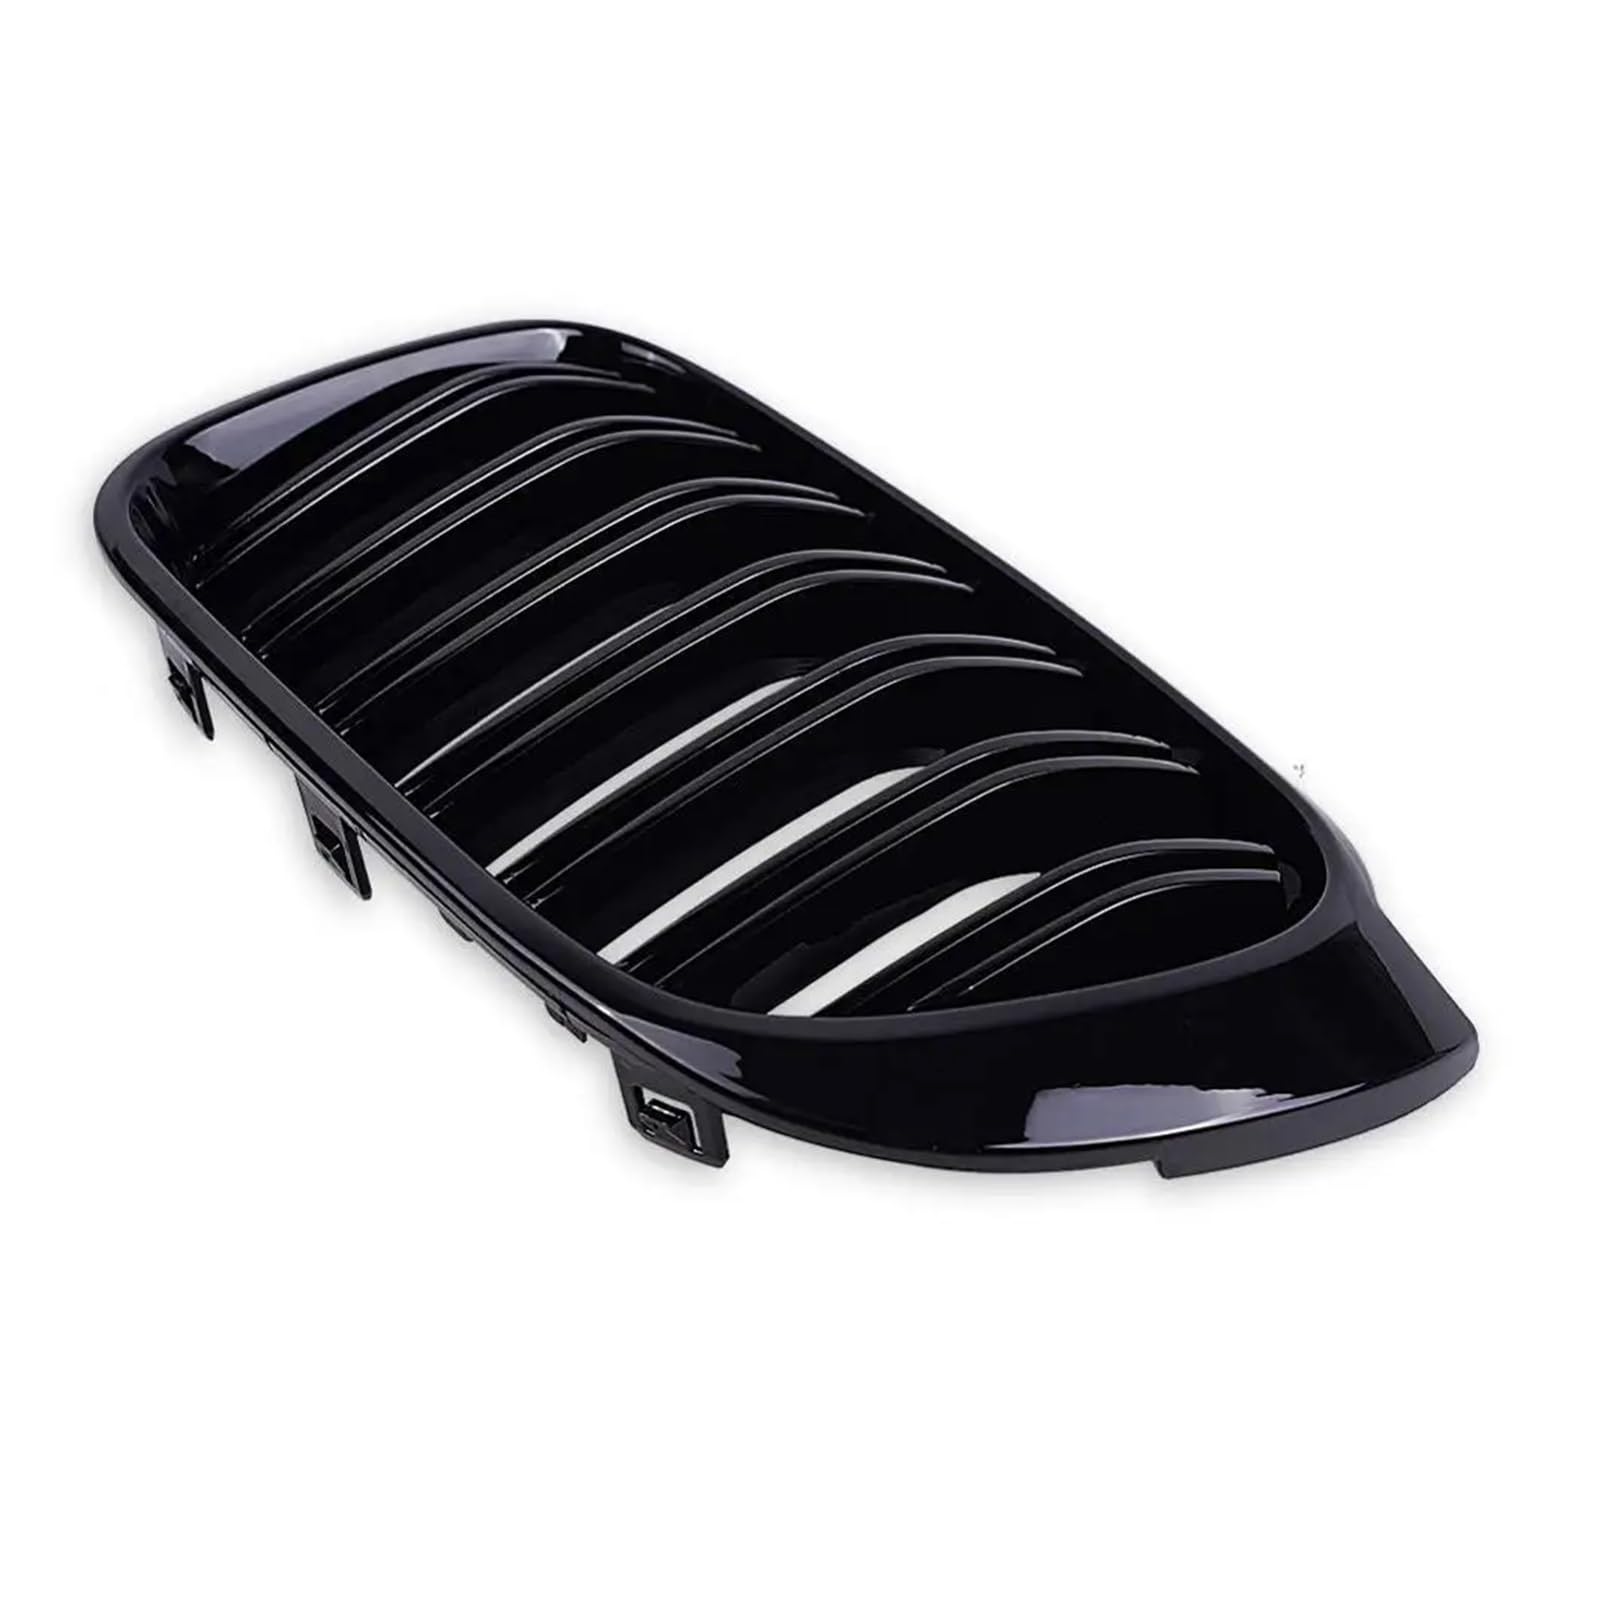 M-Style-Auto-Frontnierengitter, Dual-Line-Grillabdeckung, glänzend schwarz, kompatibel mit BMW X3 X4 F25 F26 2014 2015 2016 2017 von Pacum